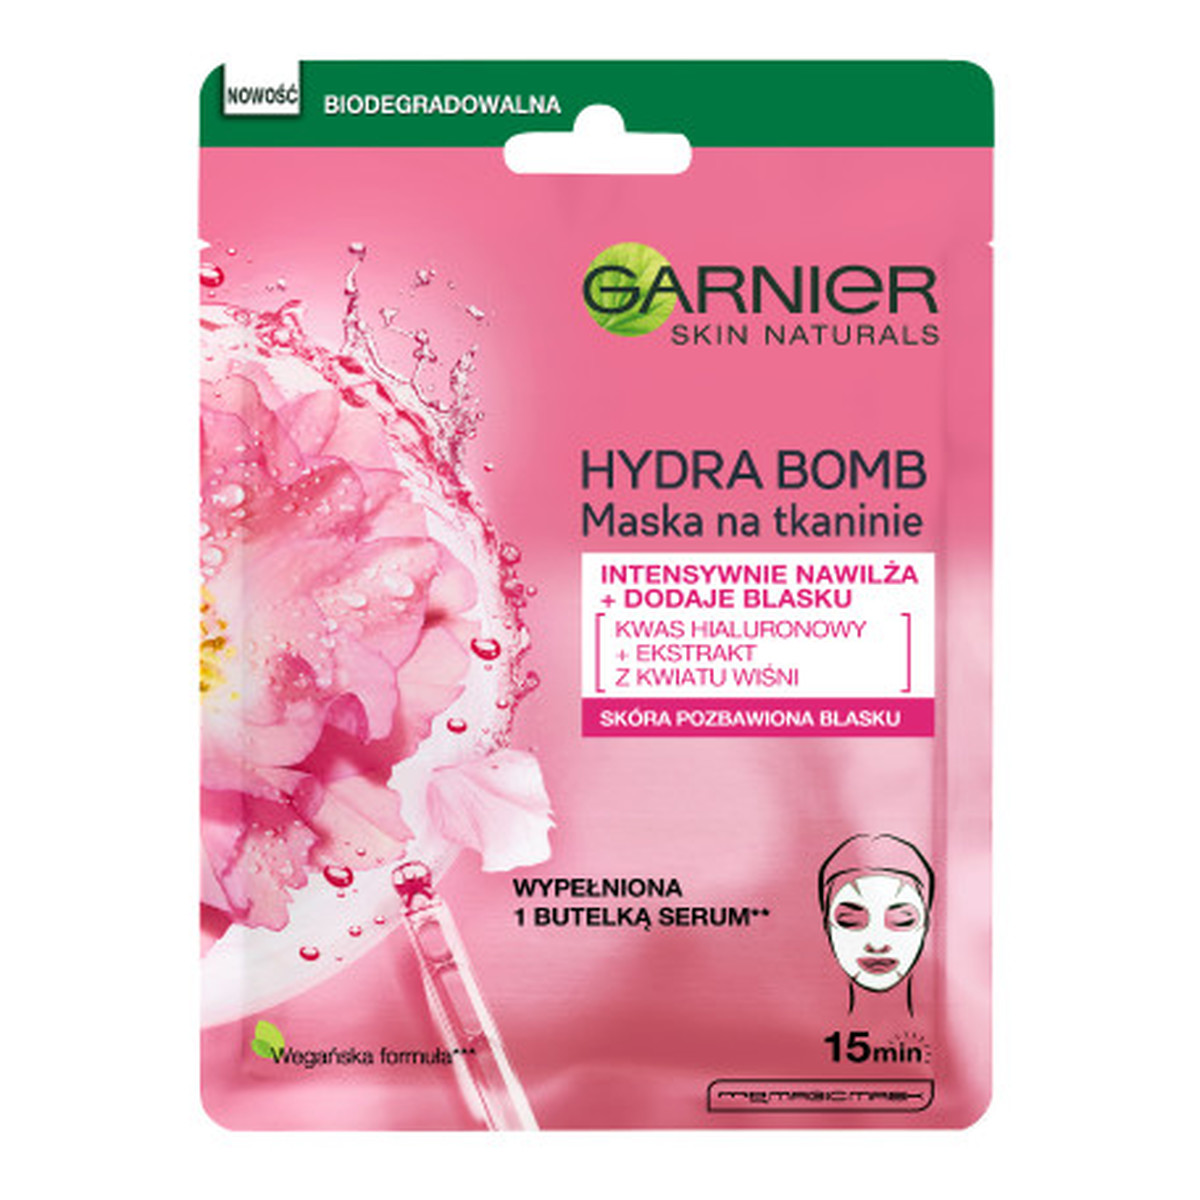 Garnier Hydra Bomb Intensywnie nawilżająca maska na tkaninie z ekstraktem z kwiatu wiśni i kwasem hialuronowym 28g